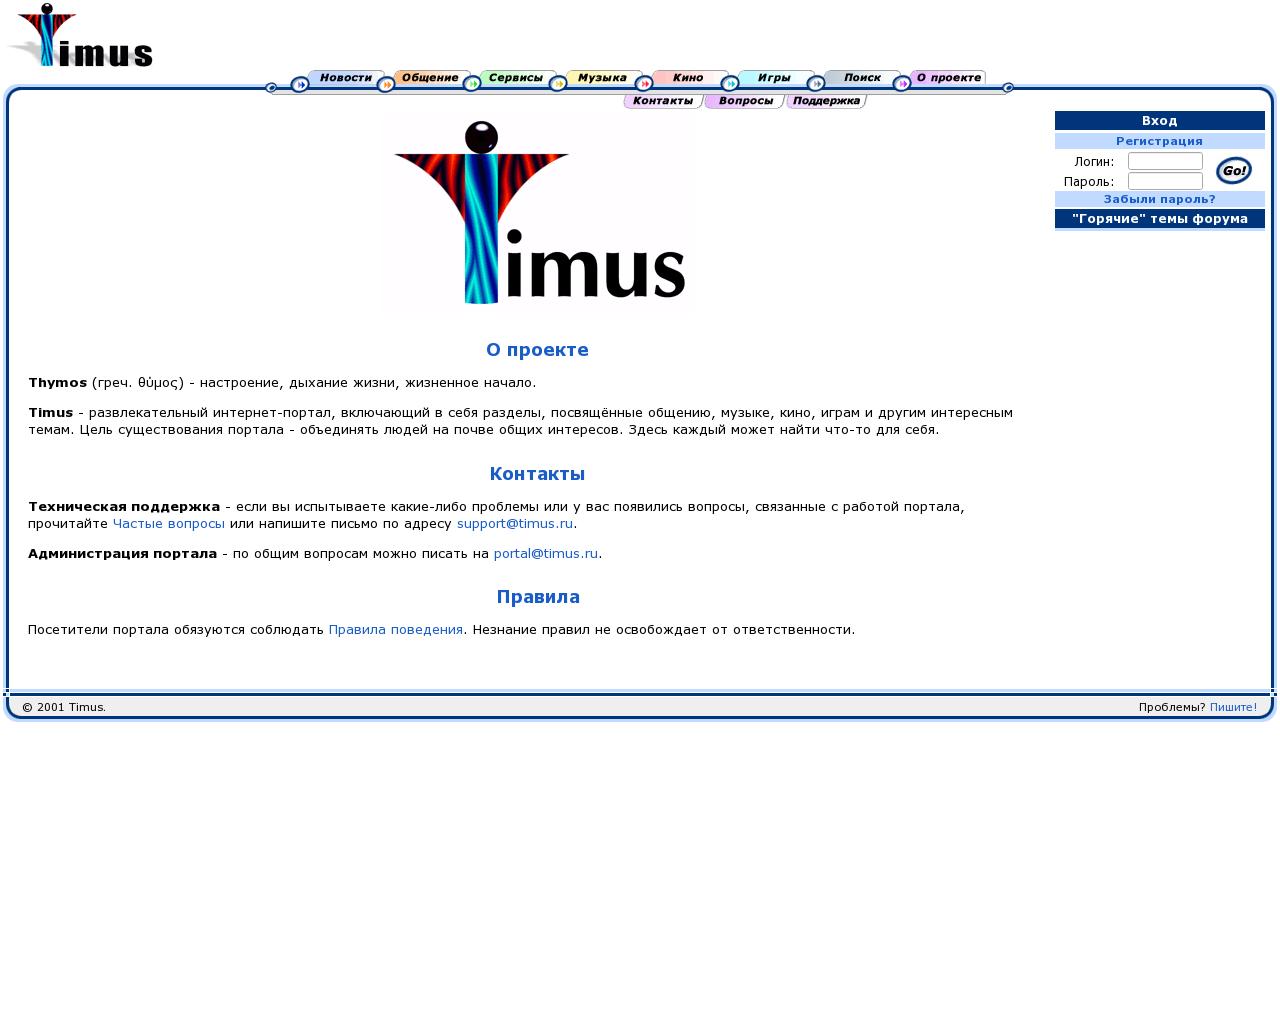 Изображение сайта timus.ru в разрешении 1280x1024